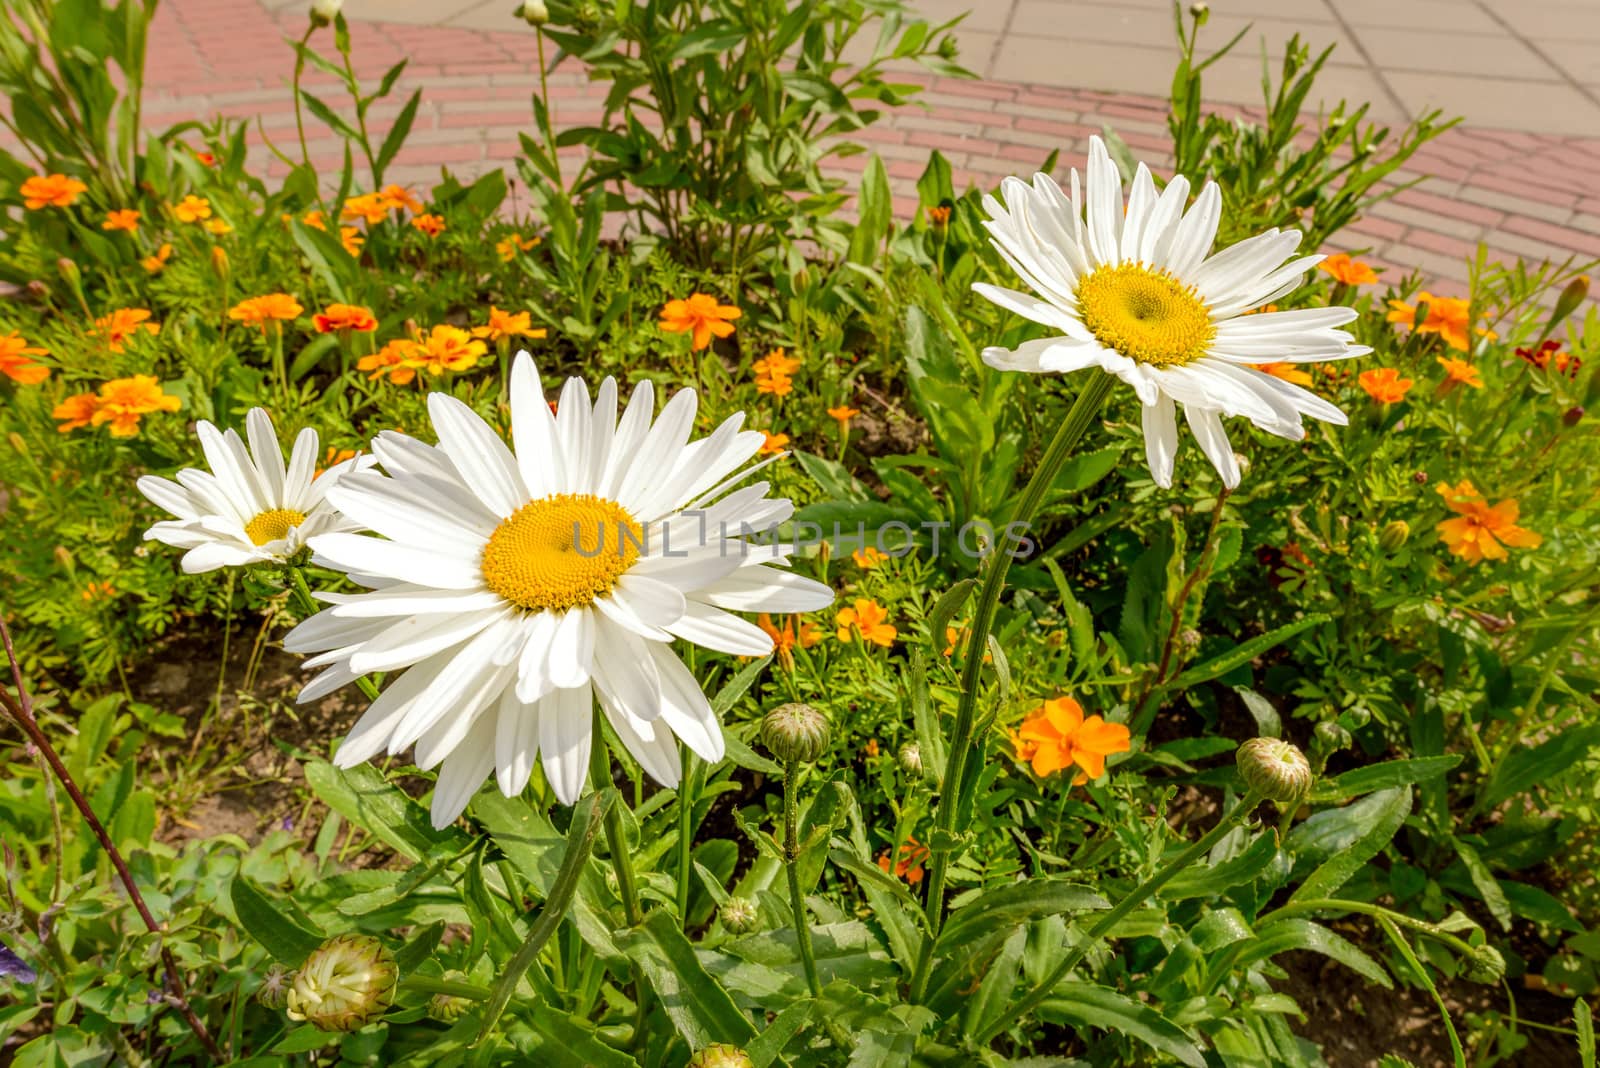 Big white daisies in the garden under the warm spring sun